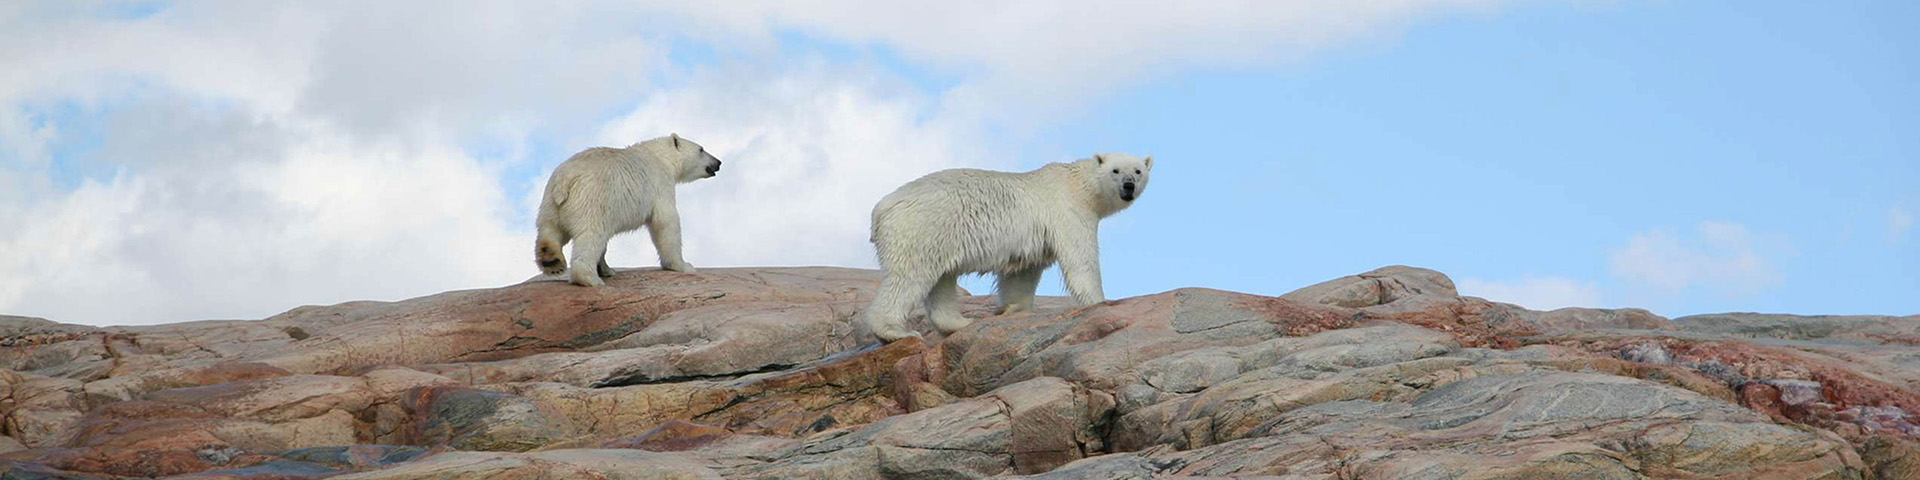 Two polar bears walking across a rocky landscape. 